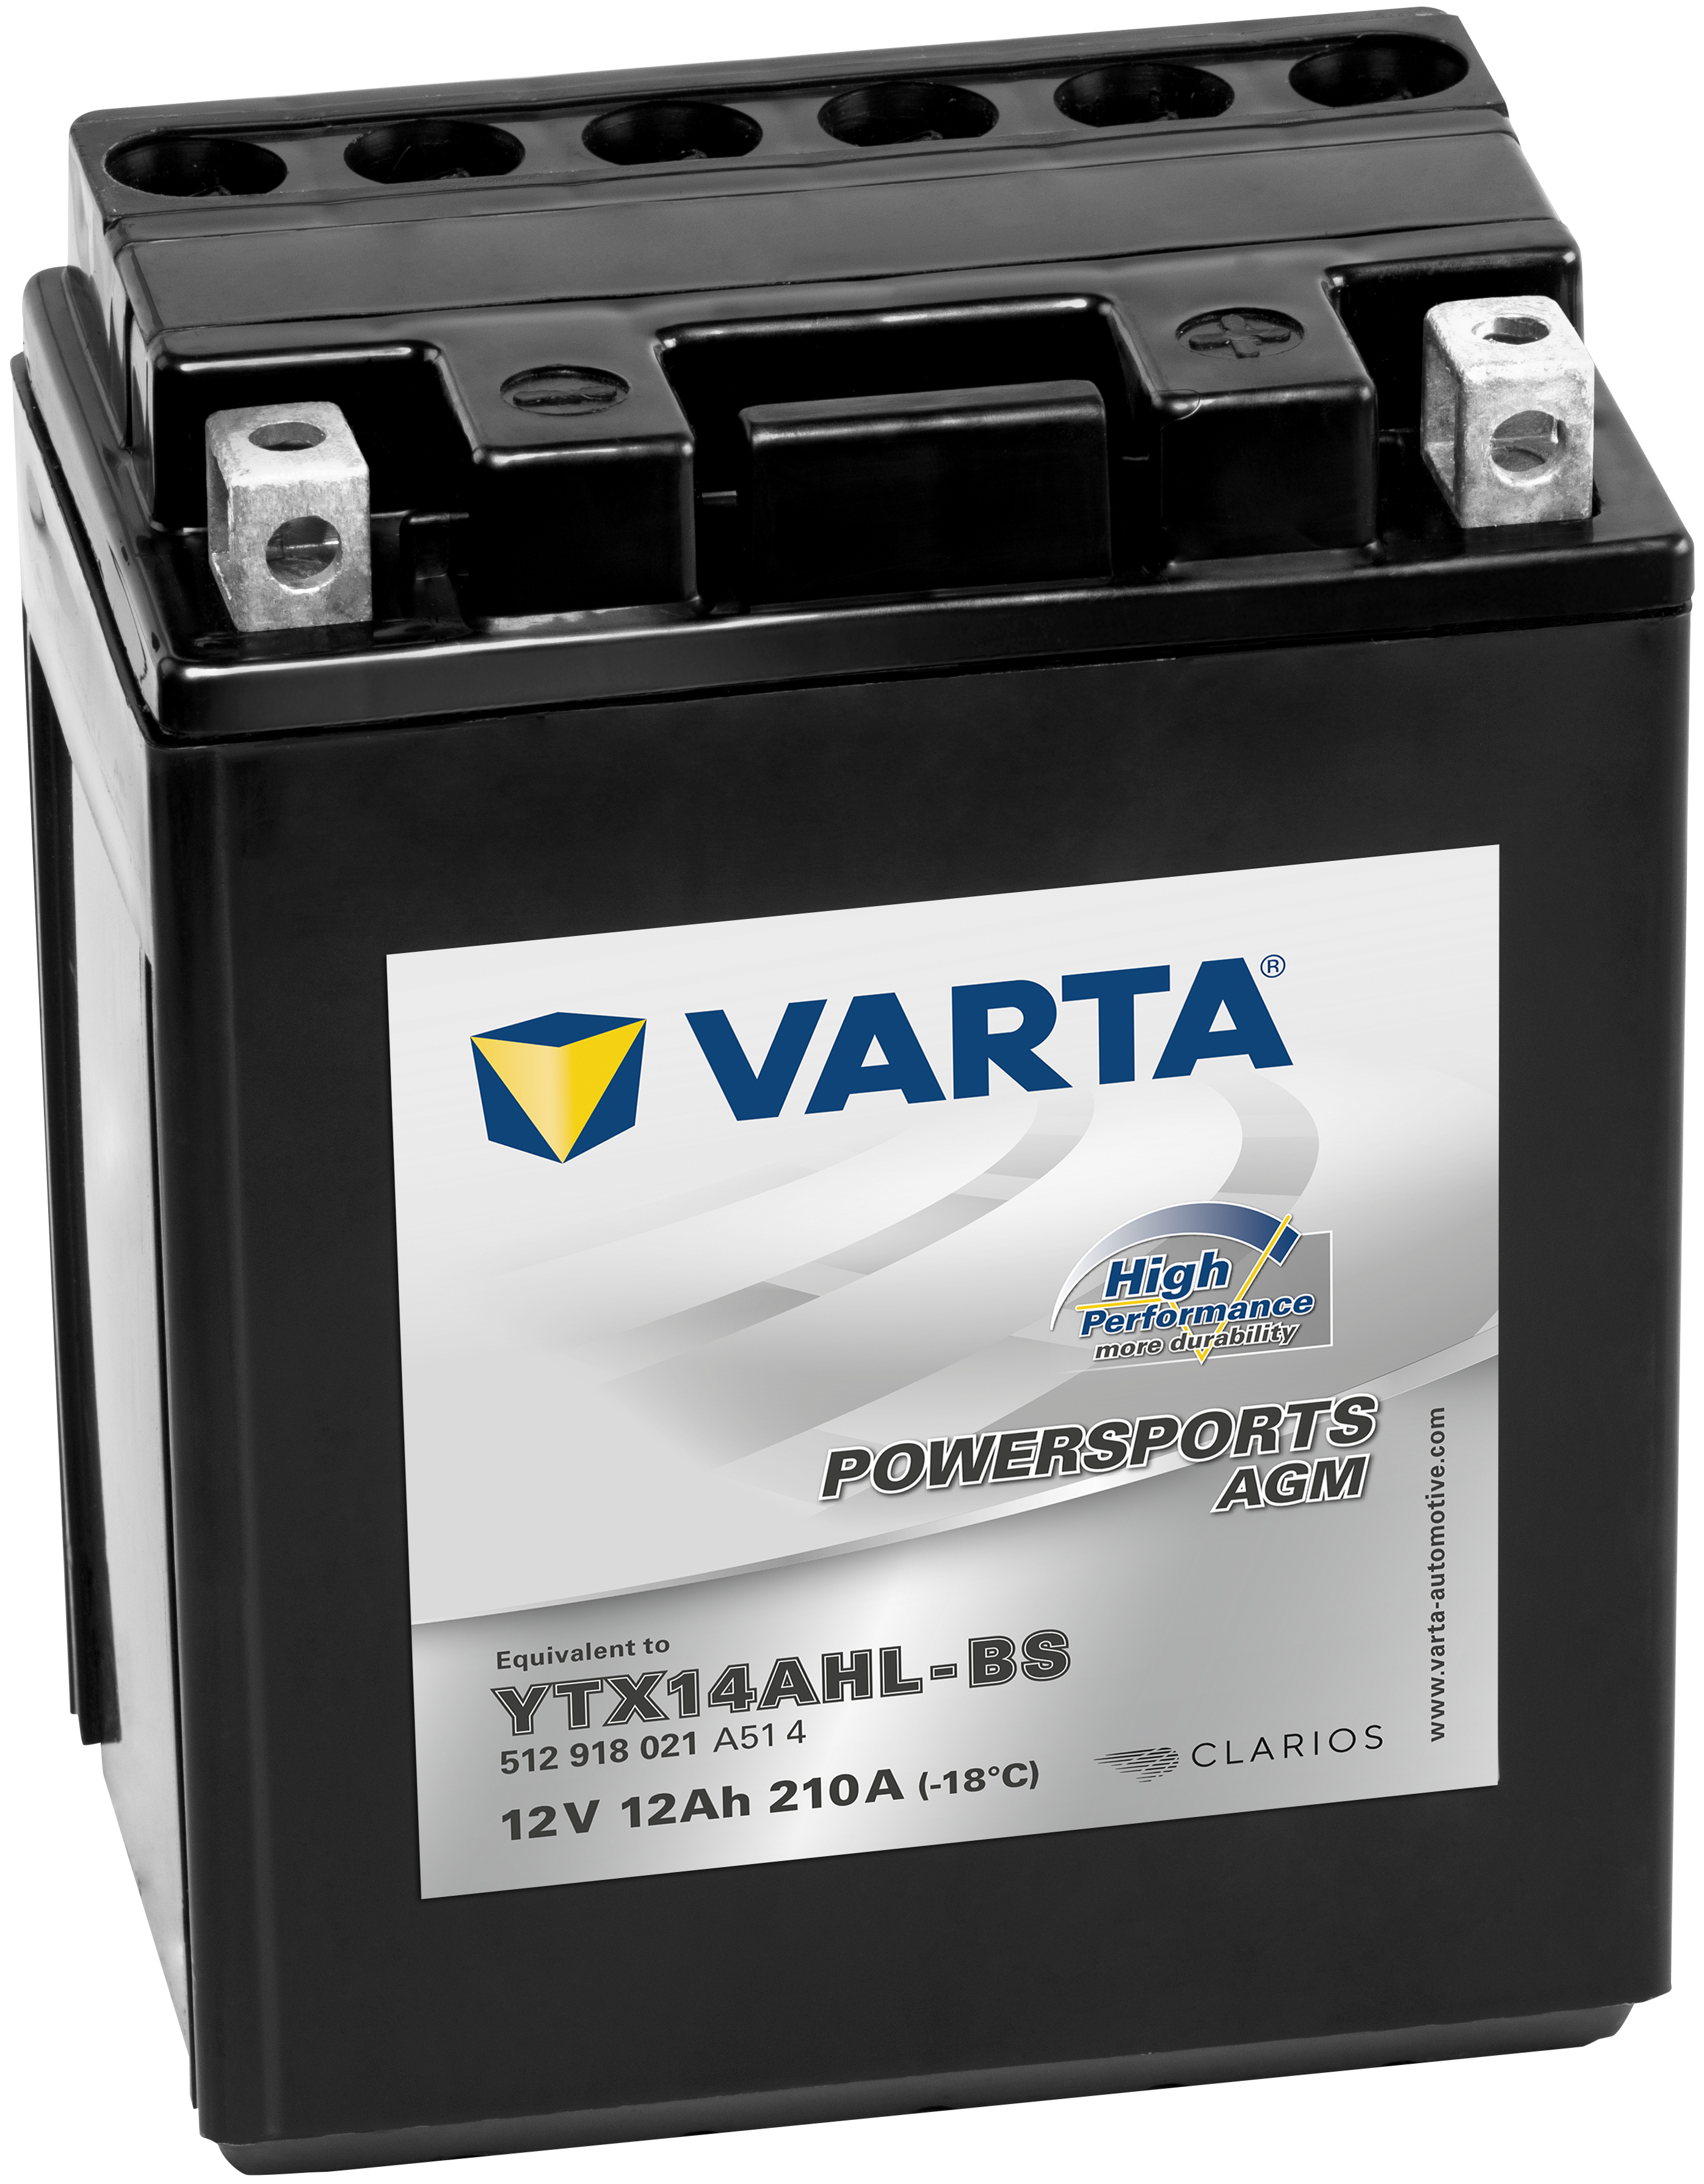 VARTA Motorradbatterie High Performance TX14AHL-BS 